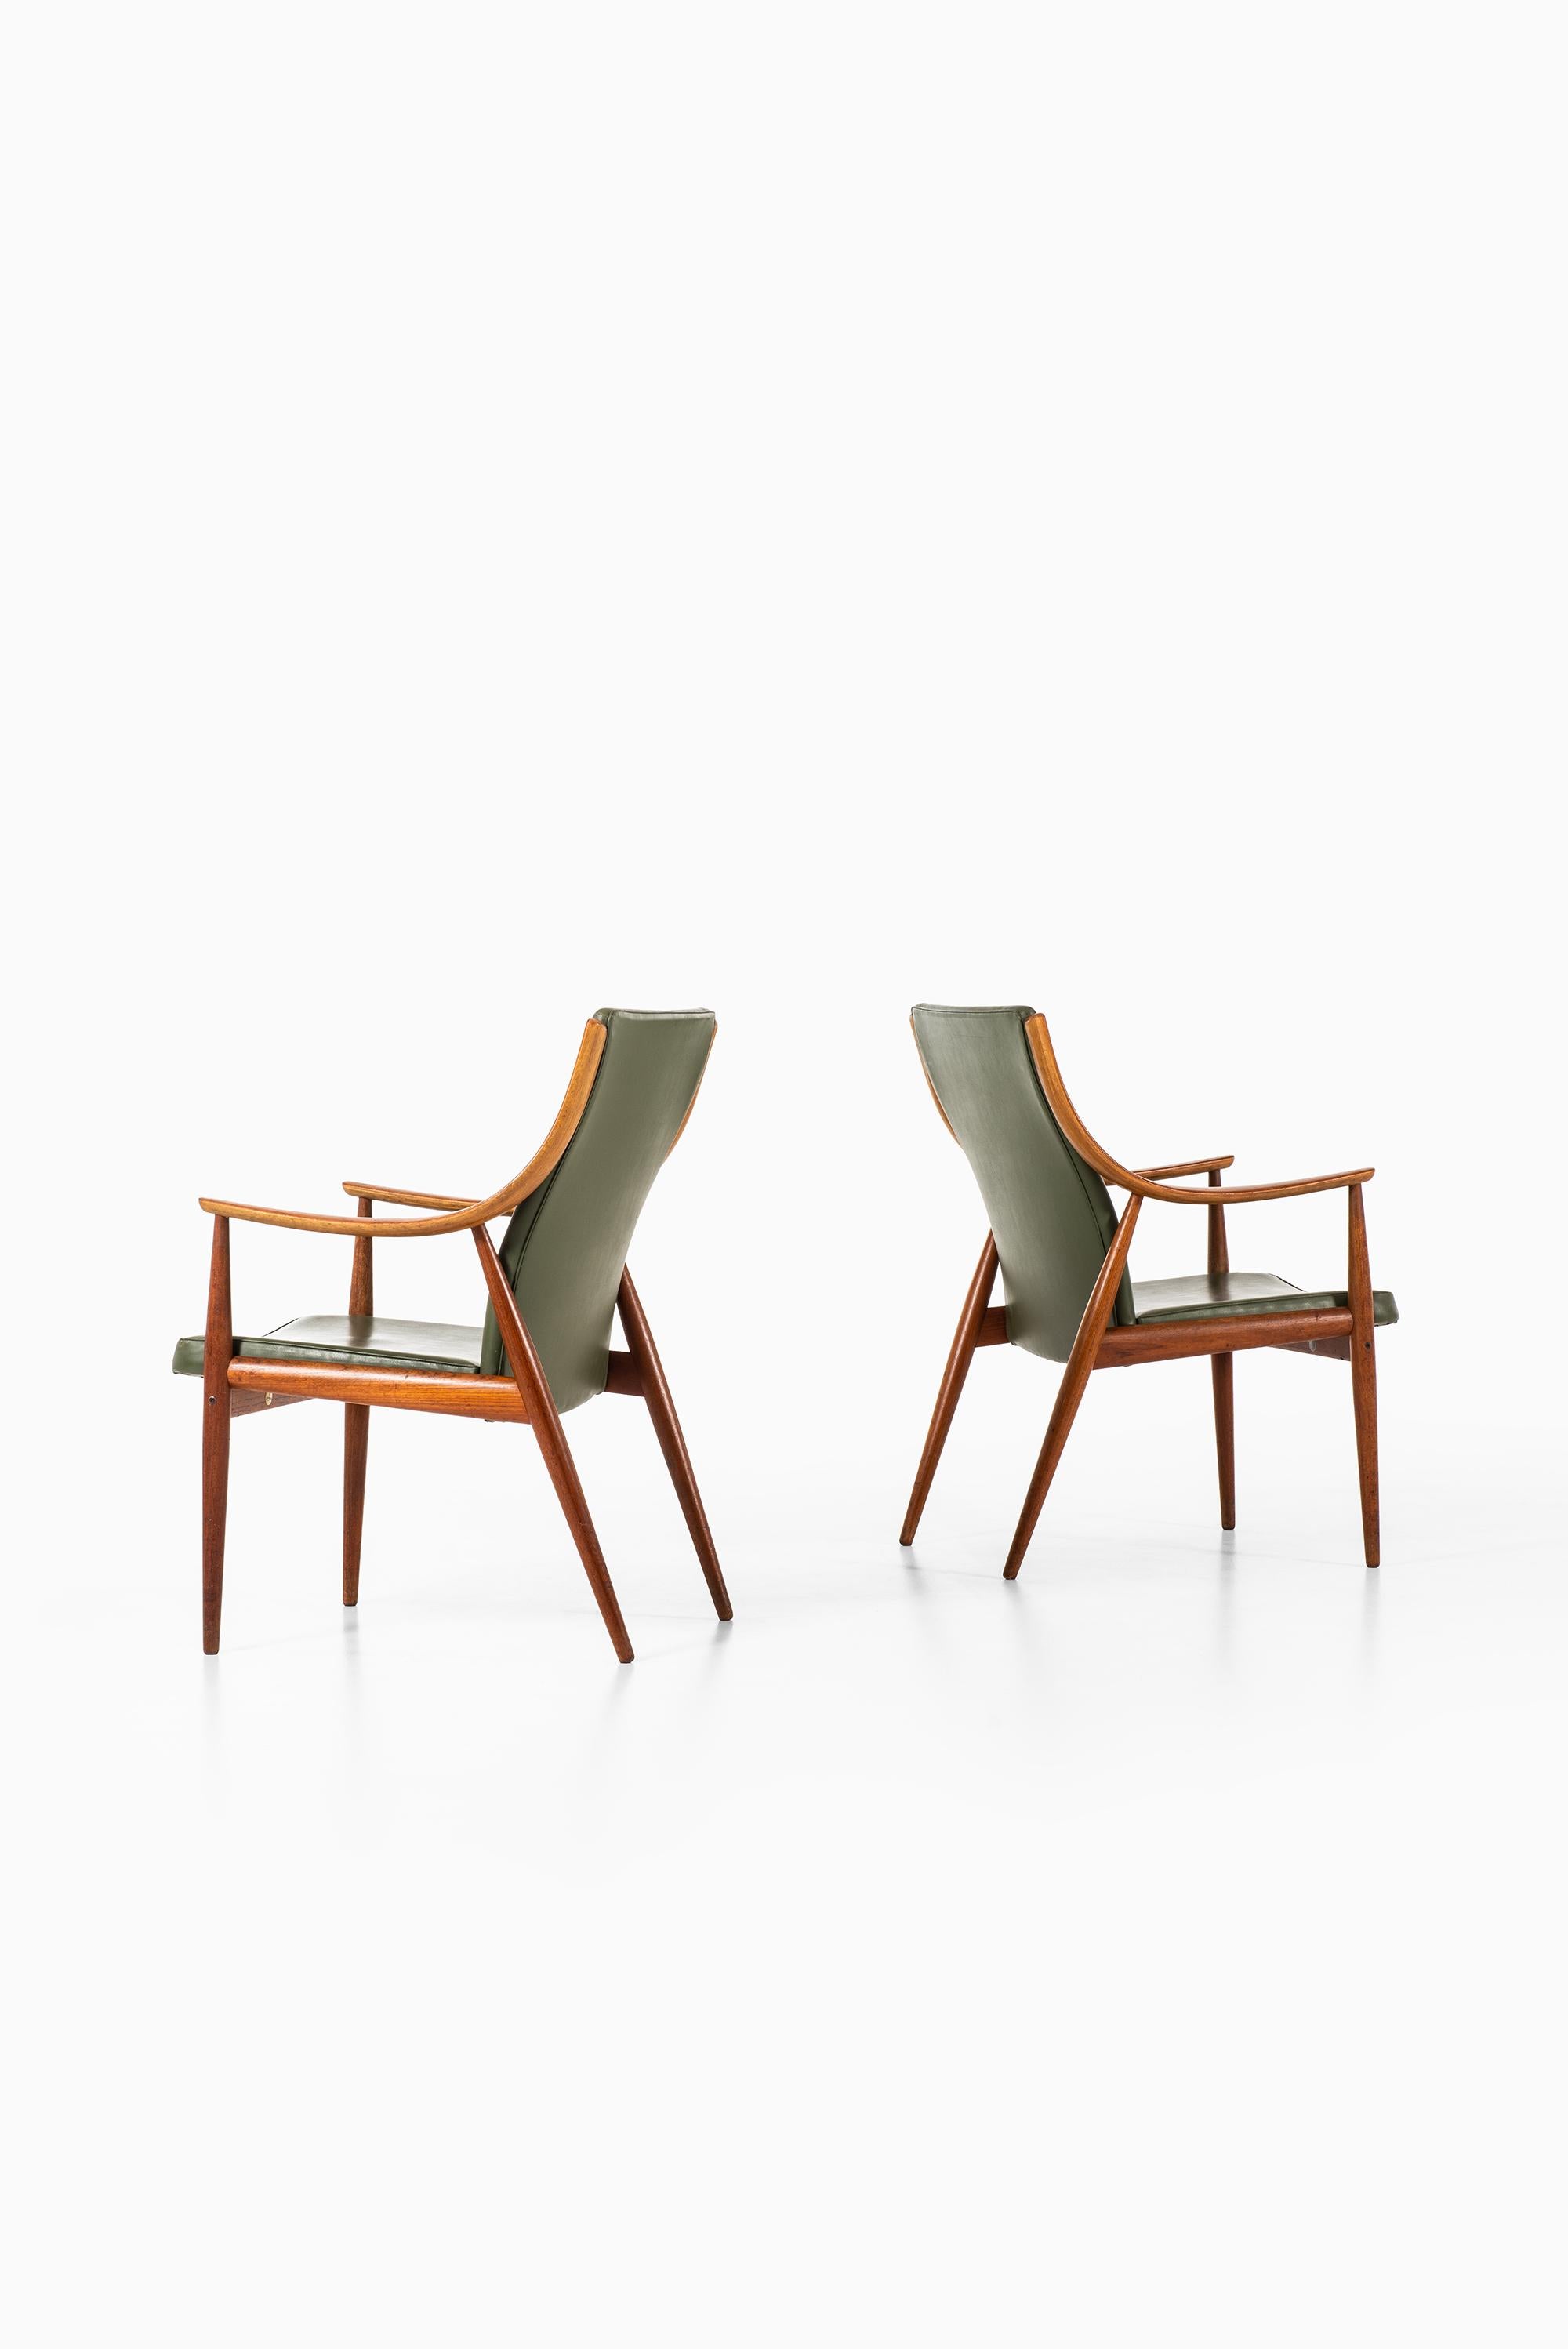 Scandinavian Modern Peter Hvidt & Orla Mølgaard-Nielsen Easy Chairs by France & Son in Denmark